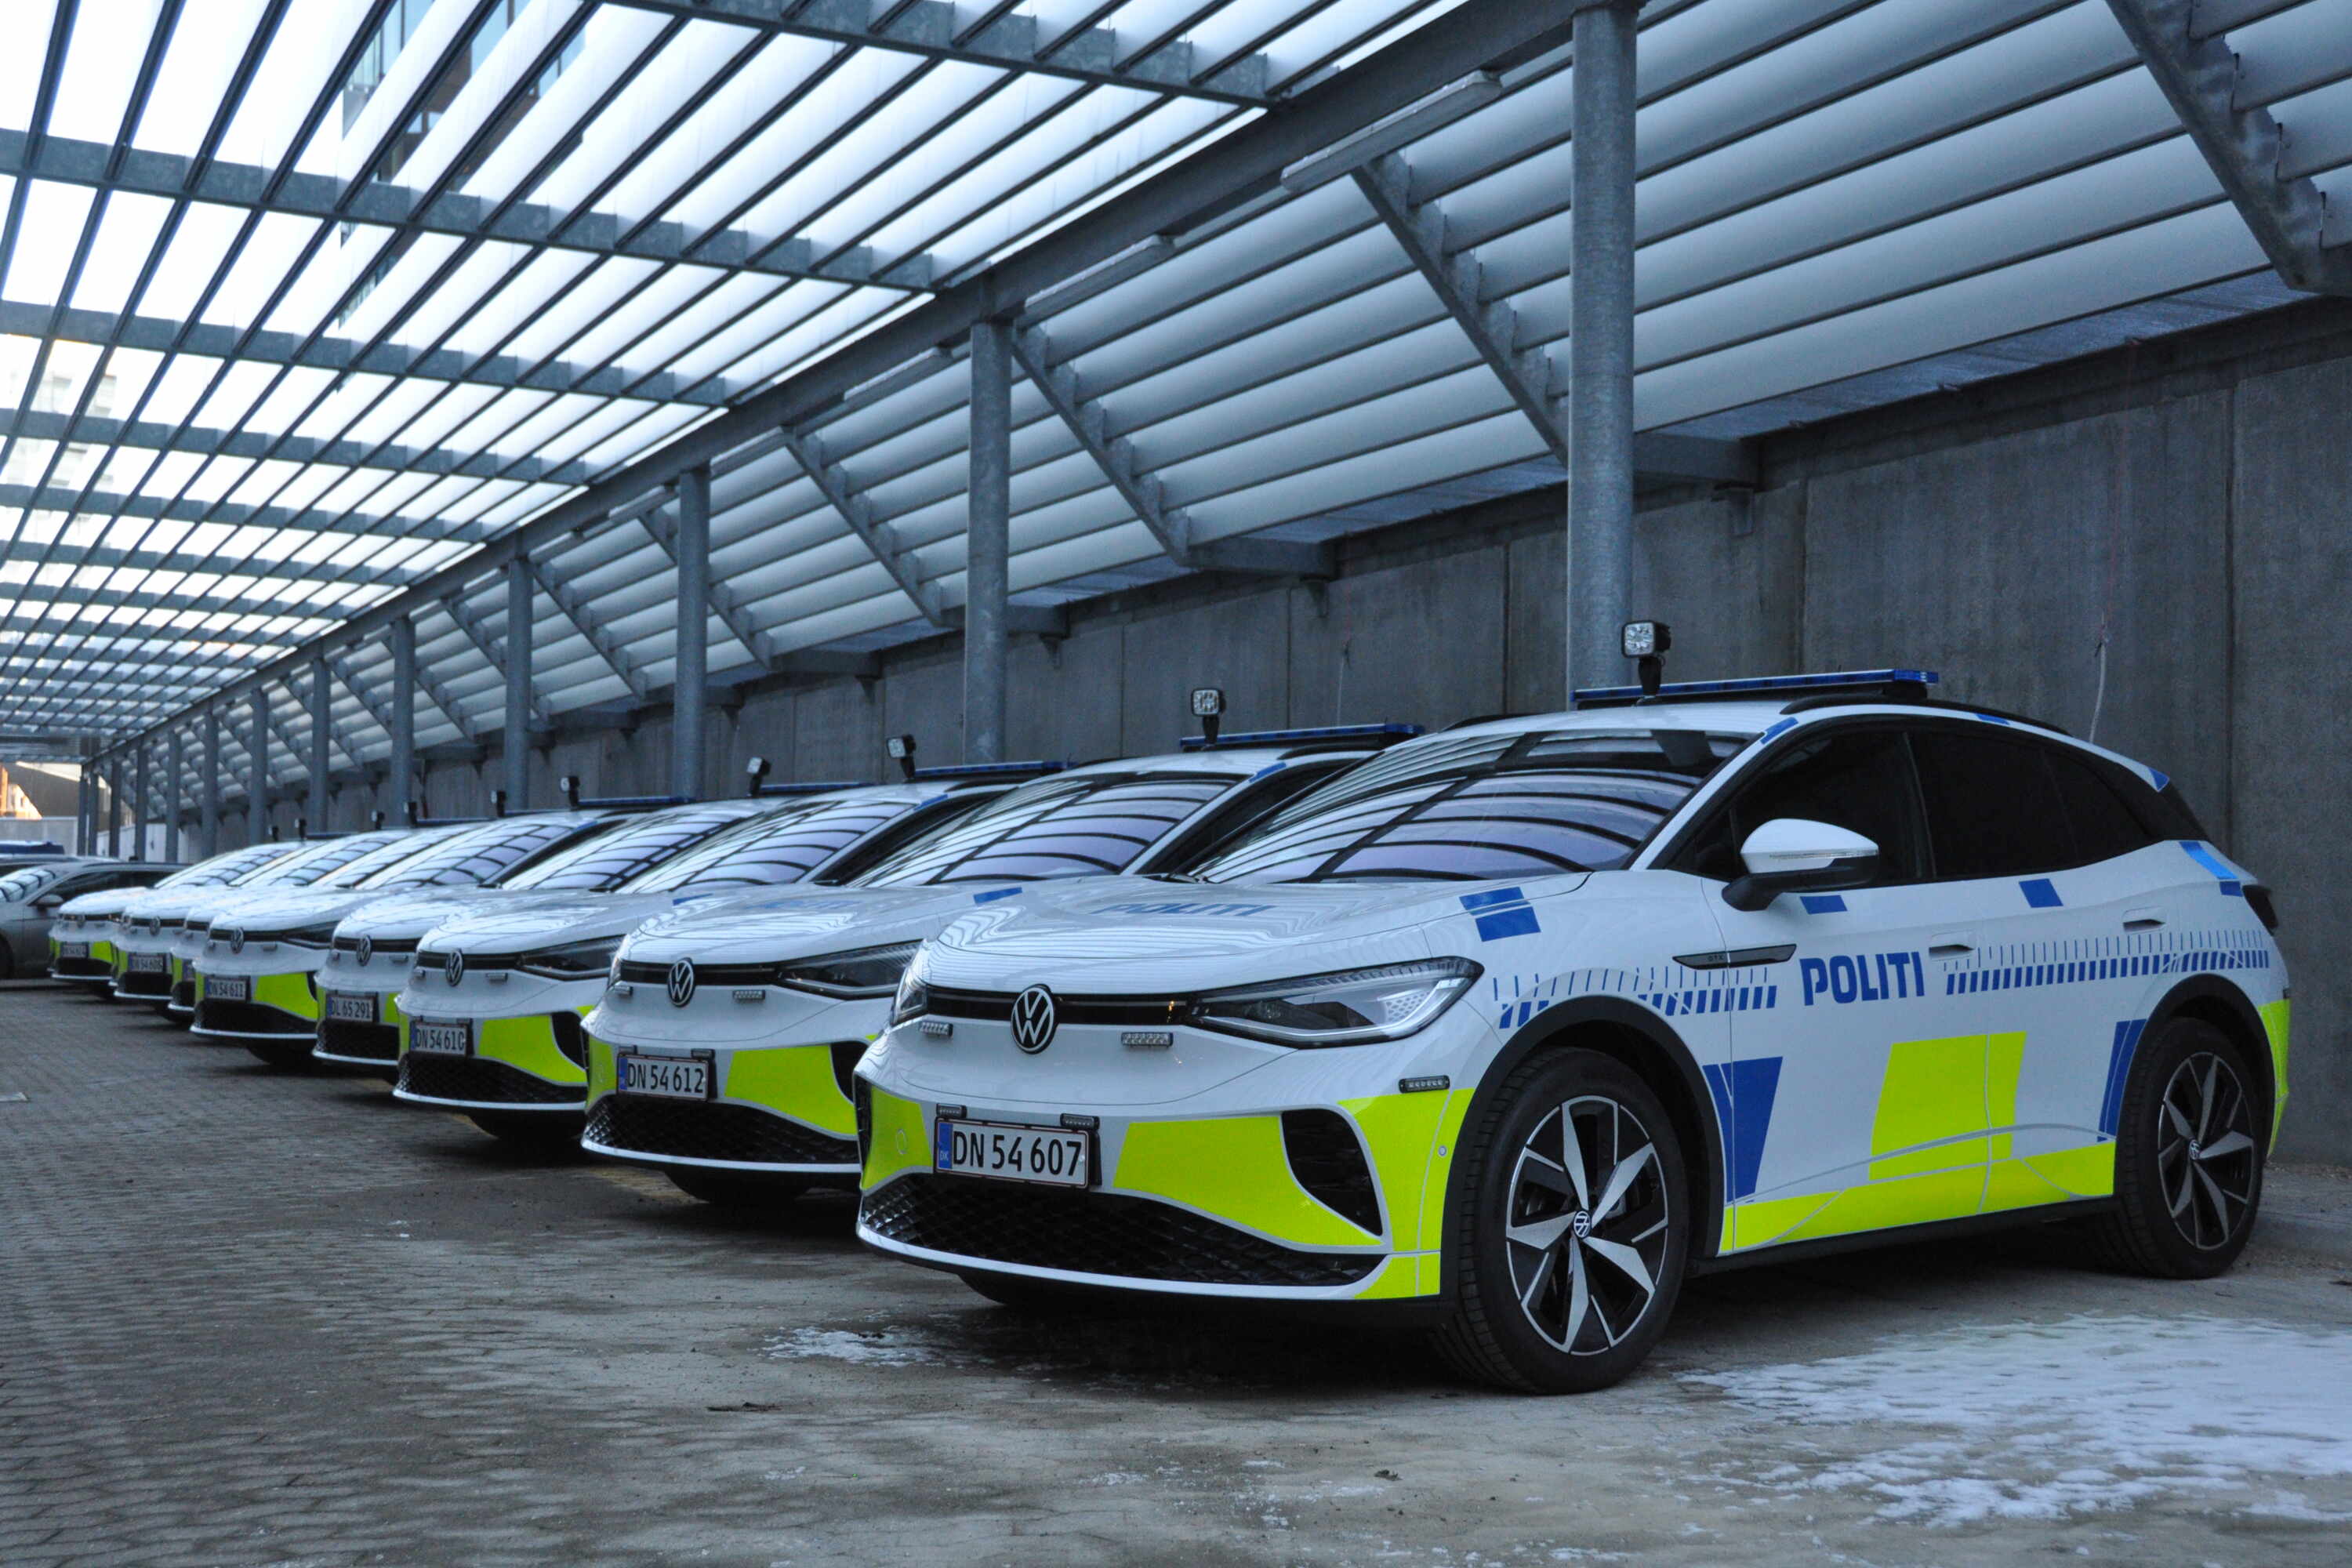 Politiet tester elektriske patruljevogne | | Rigspolitiet